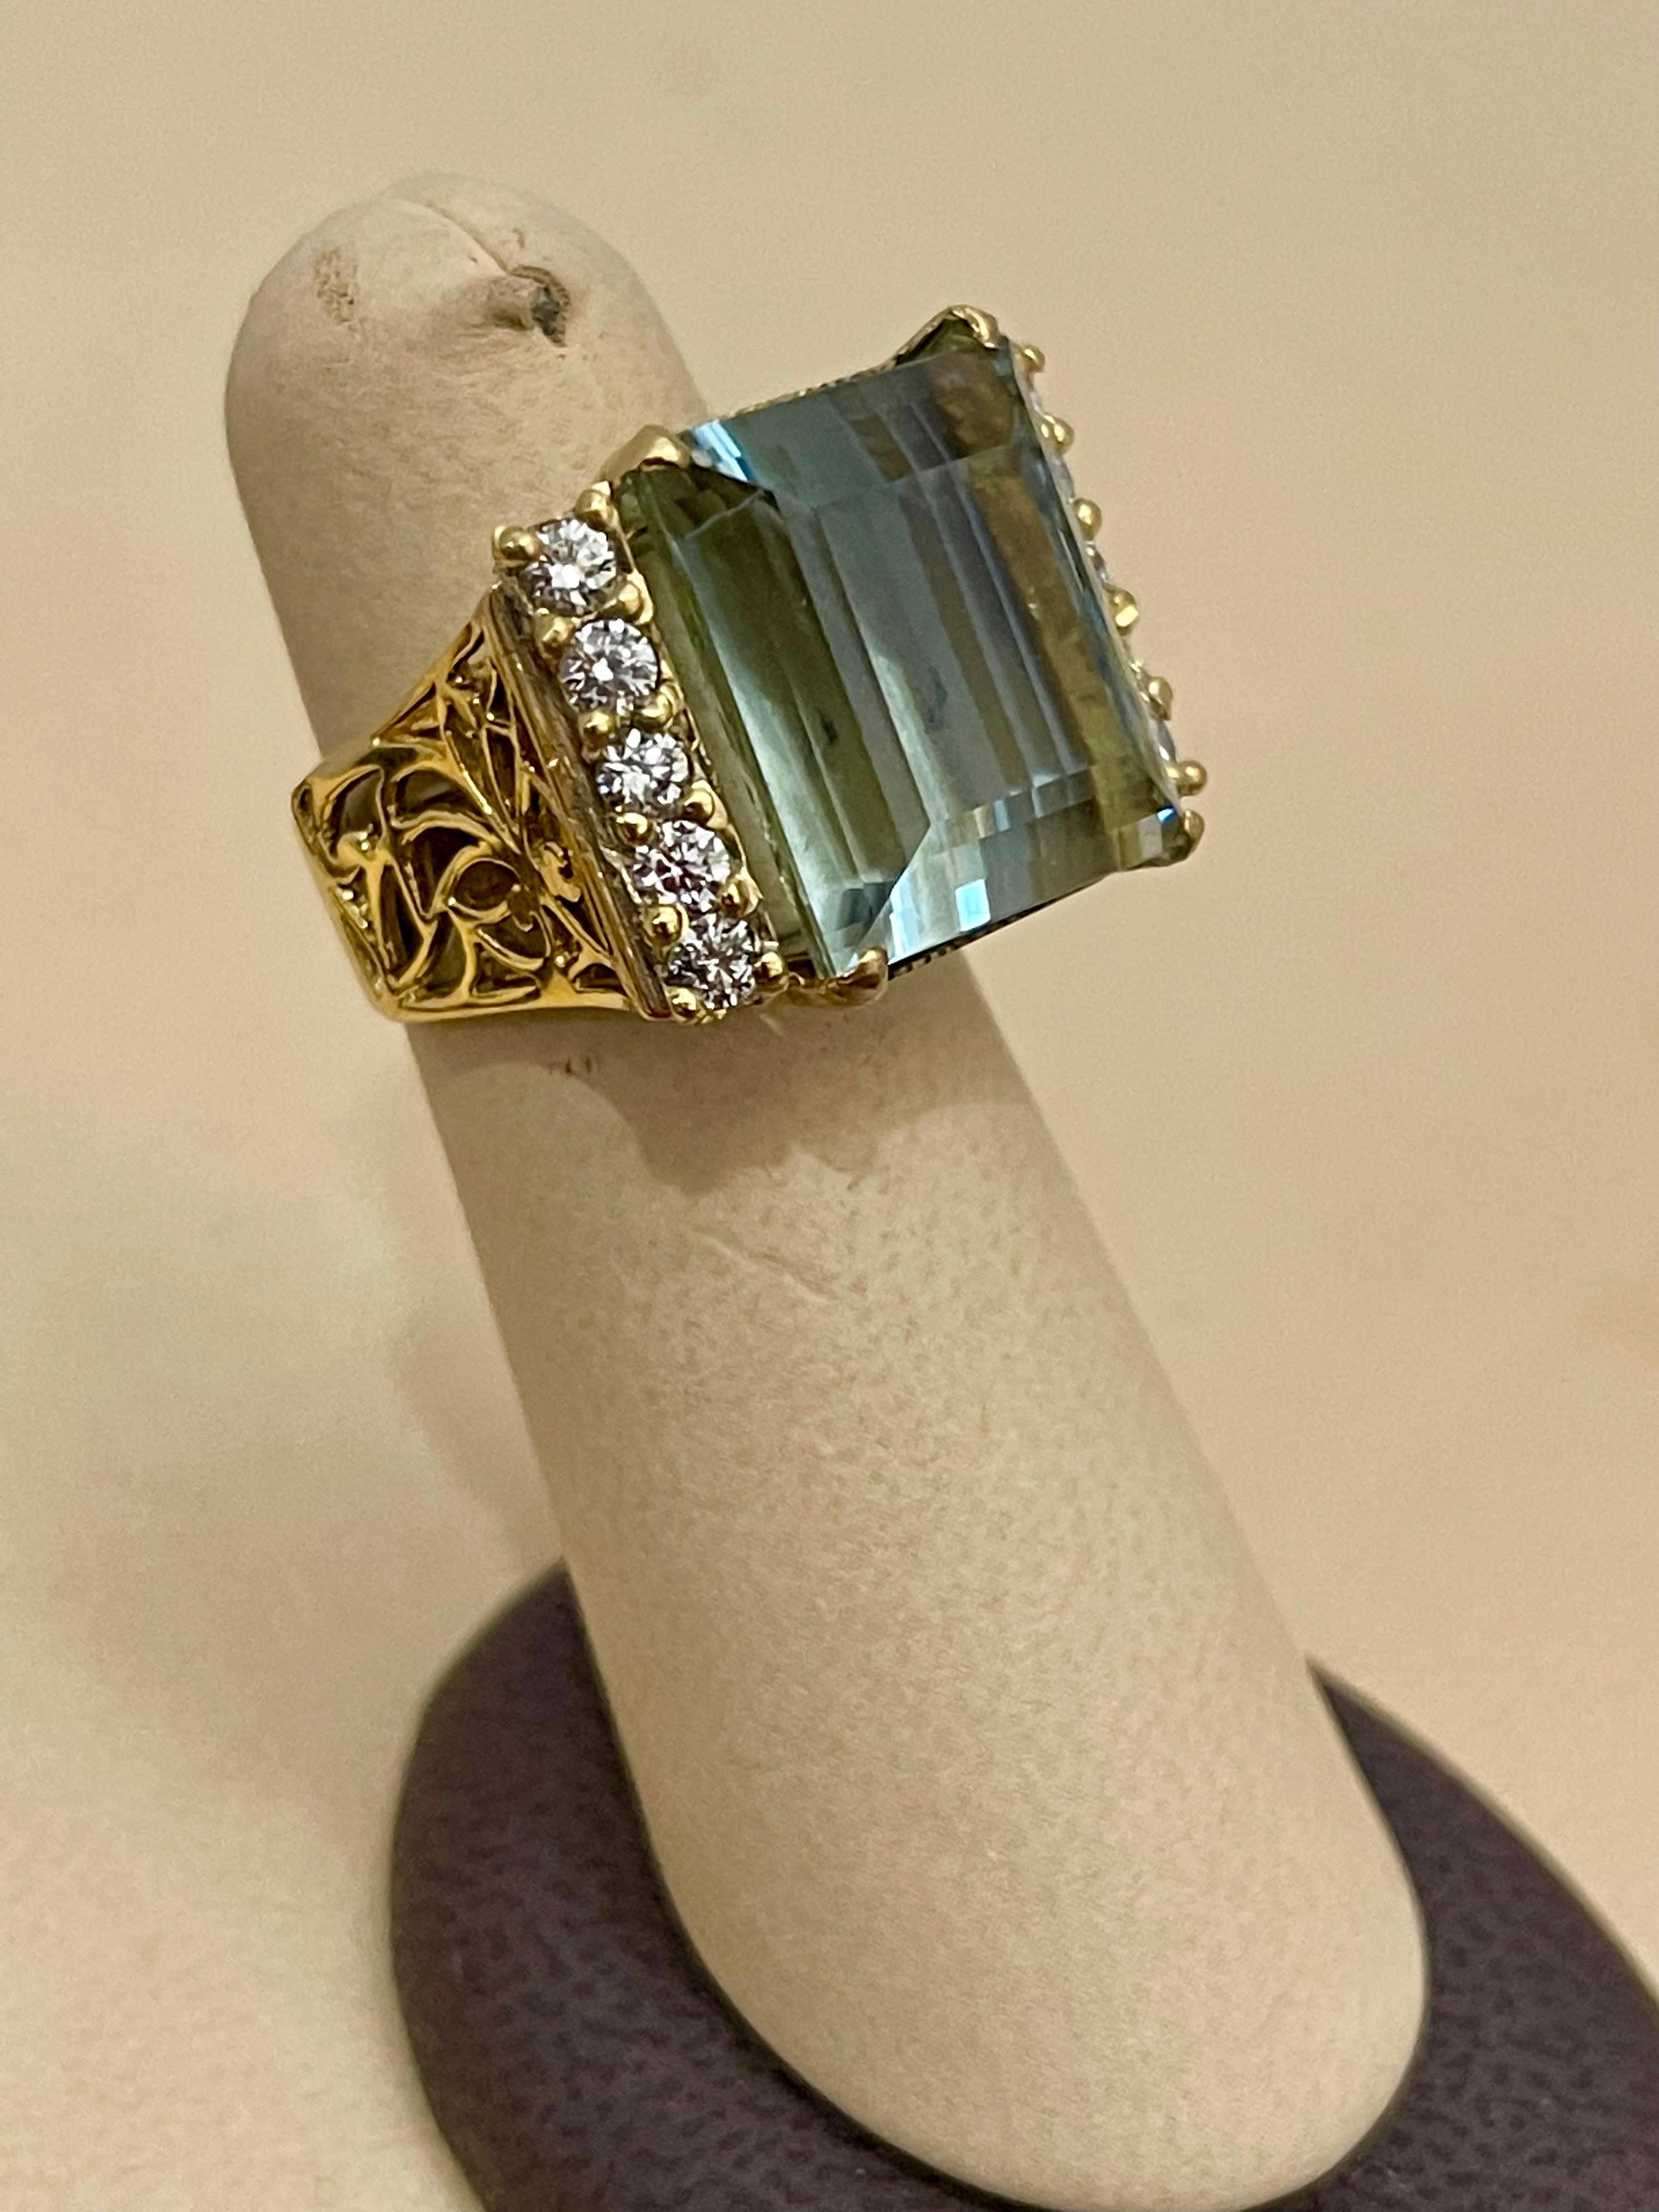 19 Carat Natural Aquamarine and Diamond Cocktail Ring, 14 Karat Yellow Gold 8